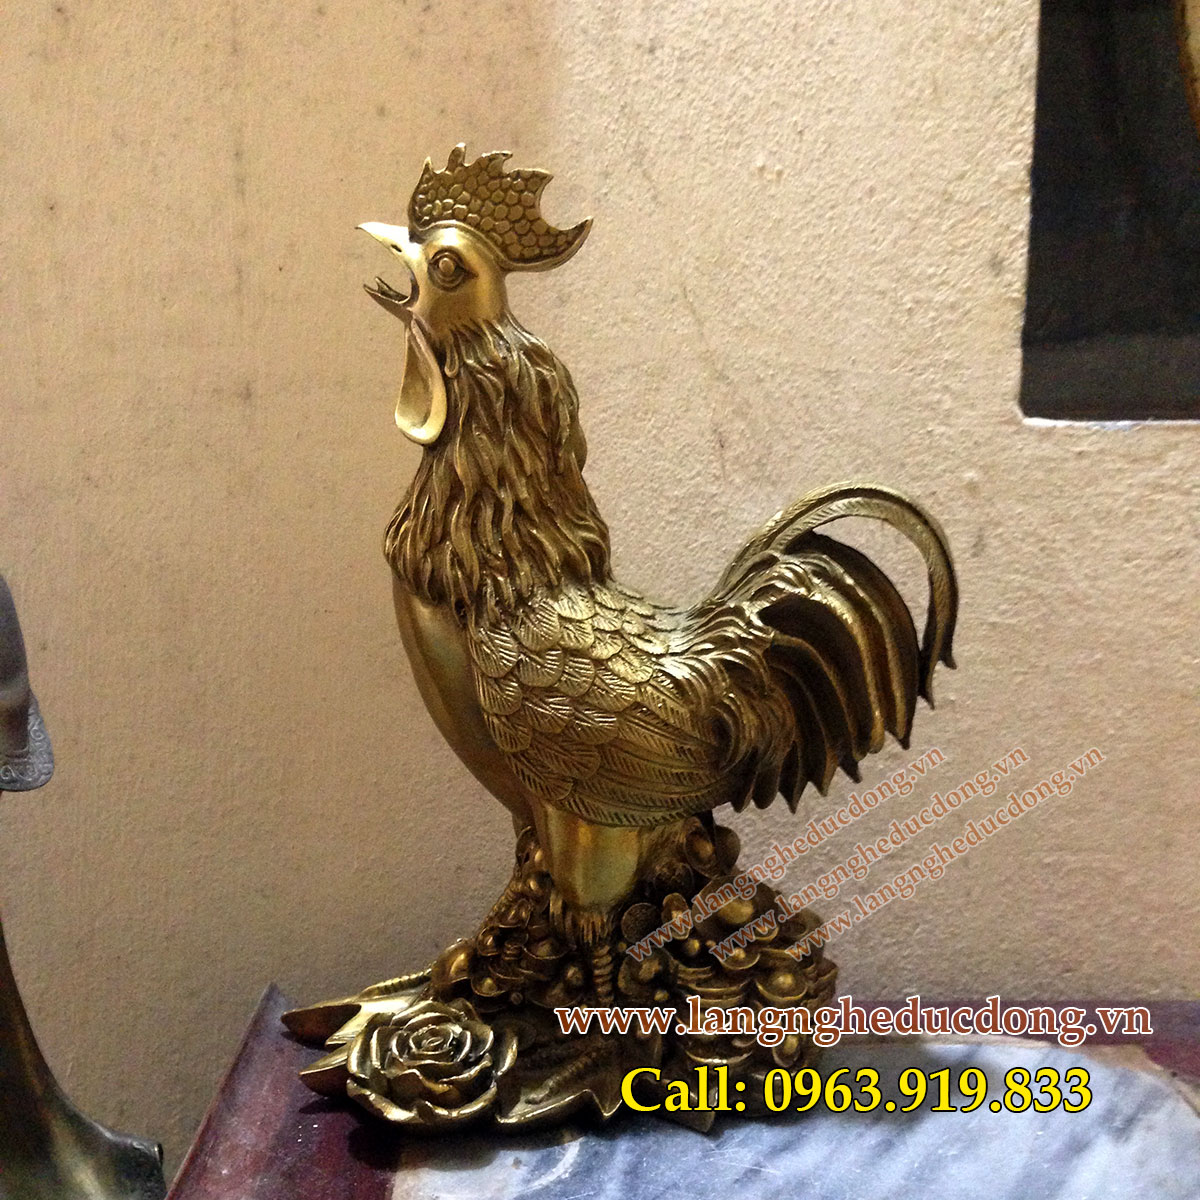 Tượng gà phong thủy chống lại thói trăng hoa bằng đồng, mẫu gà hoa hồng 30cm, gà phong thủy